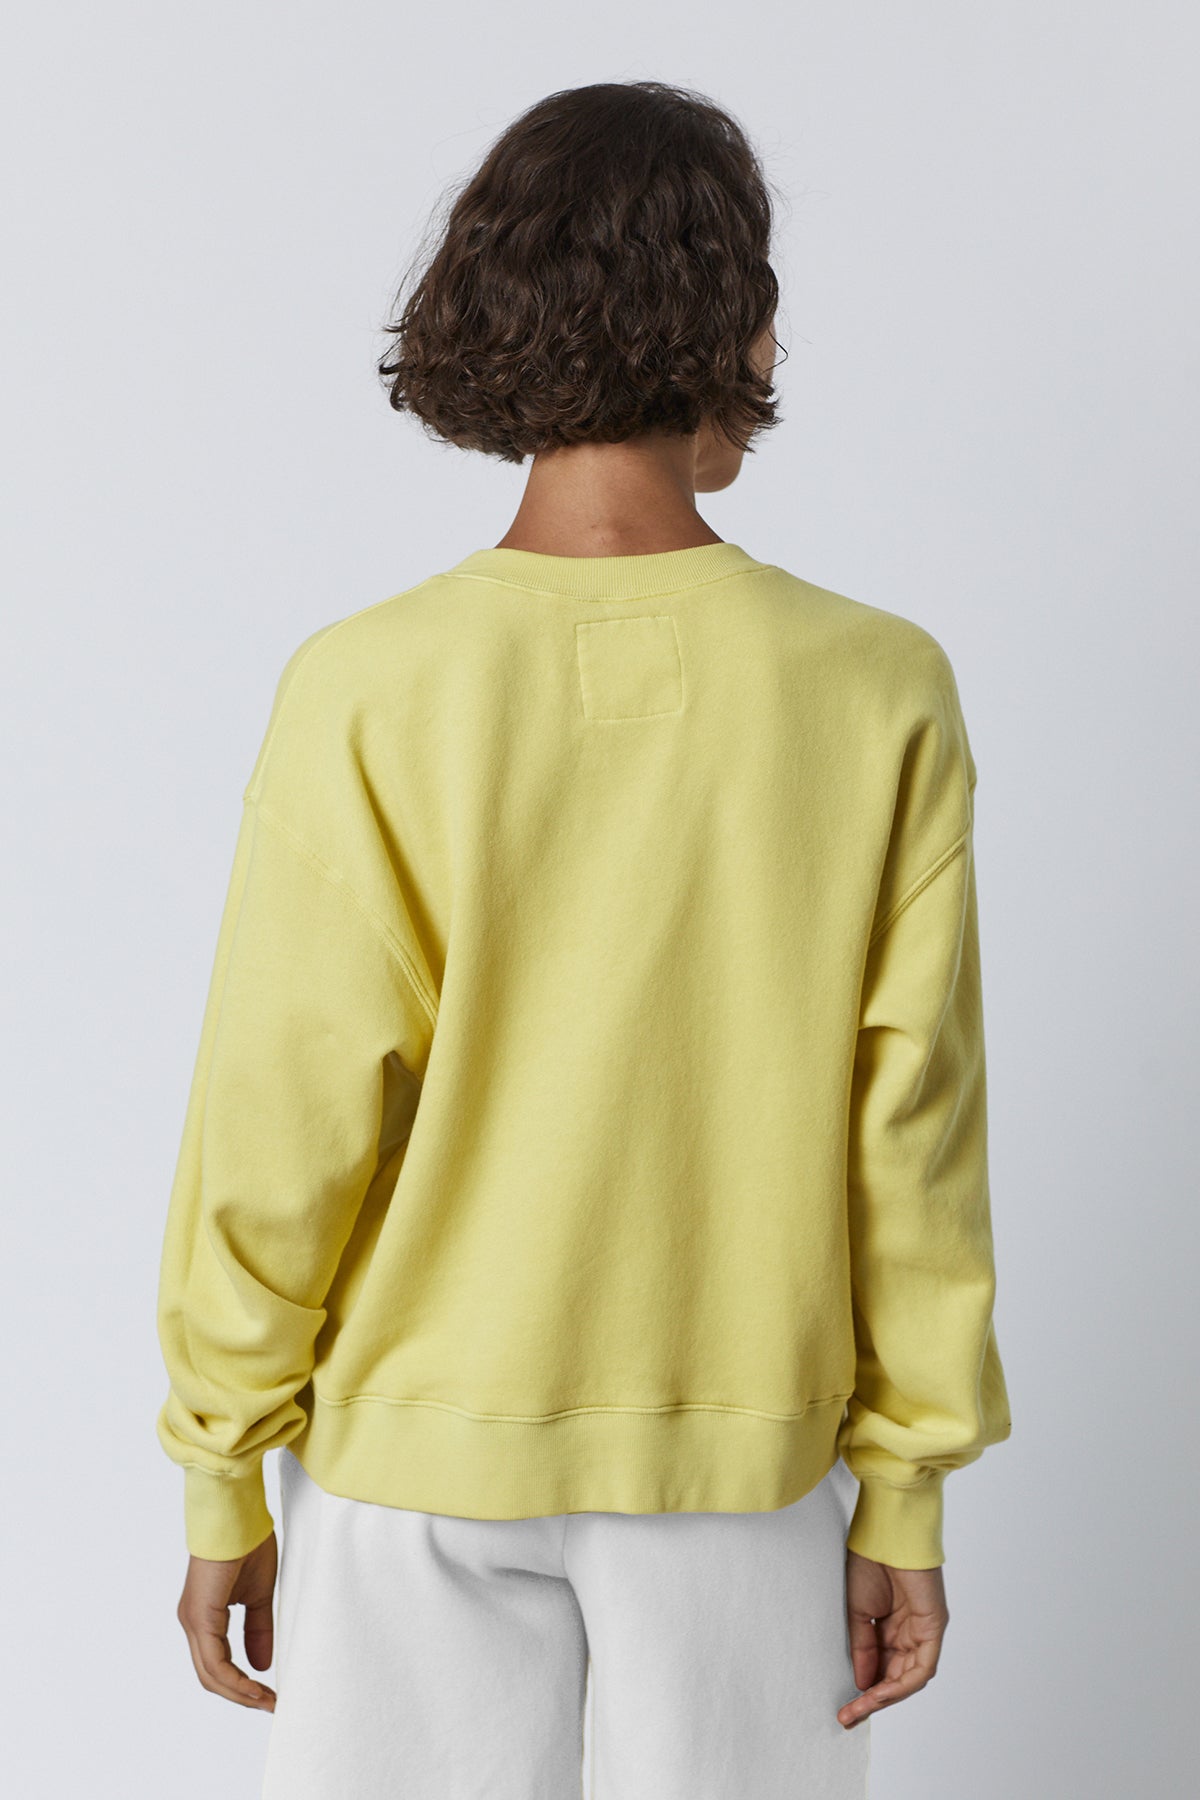 Ynez Sweatshirt in lemon yellow back-26007095738561